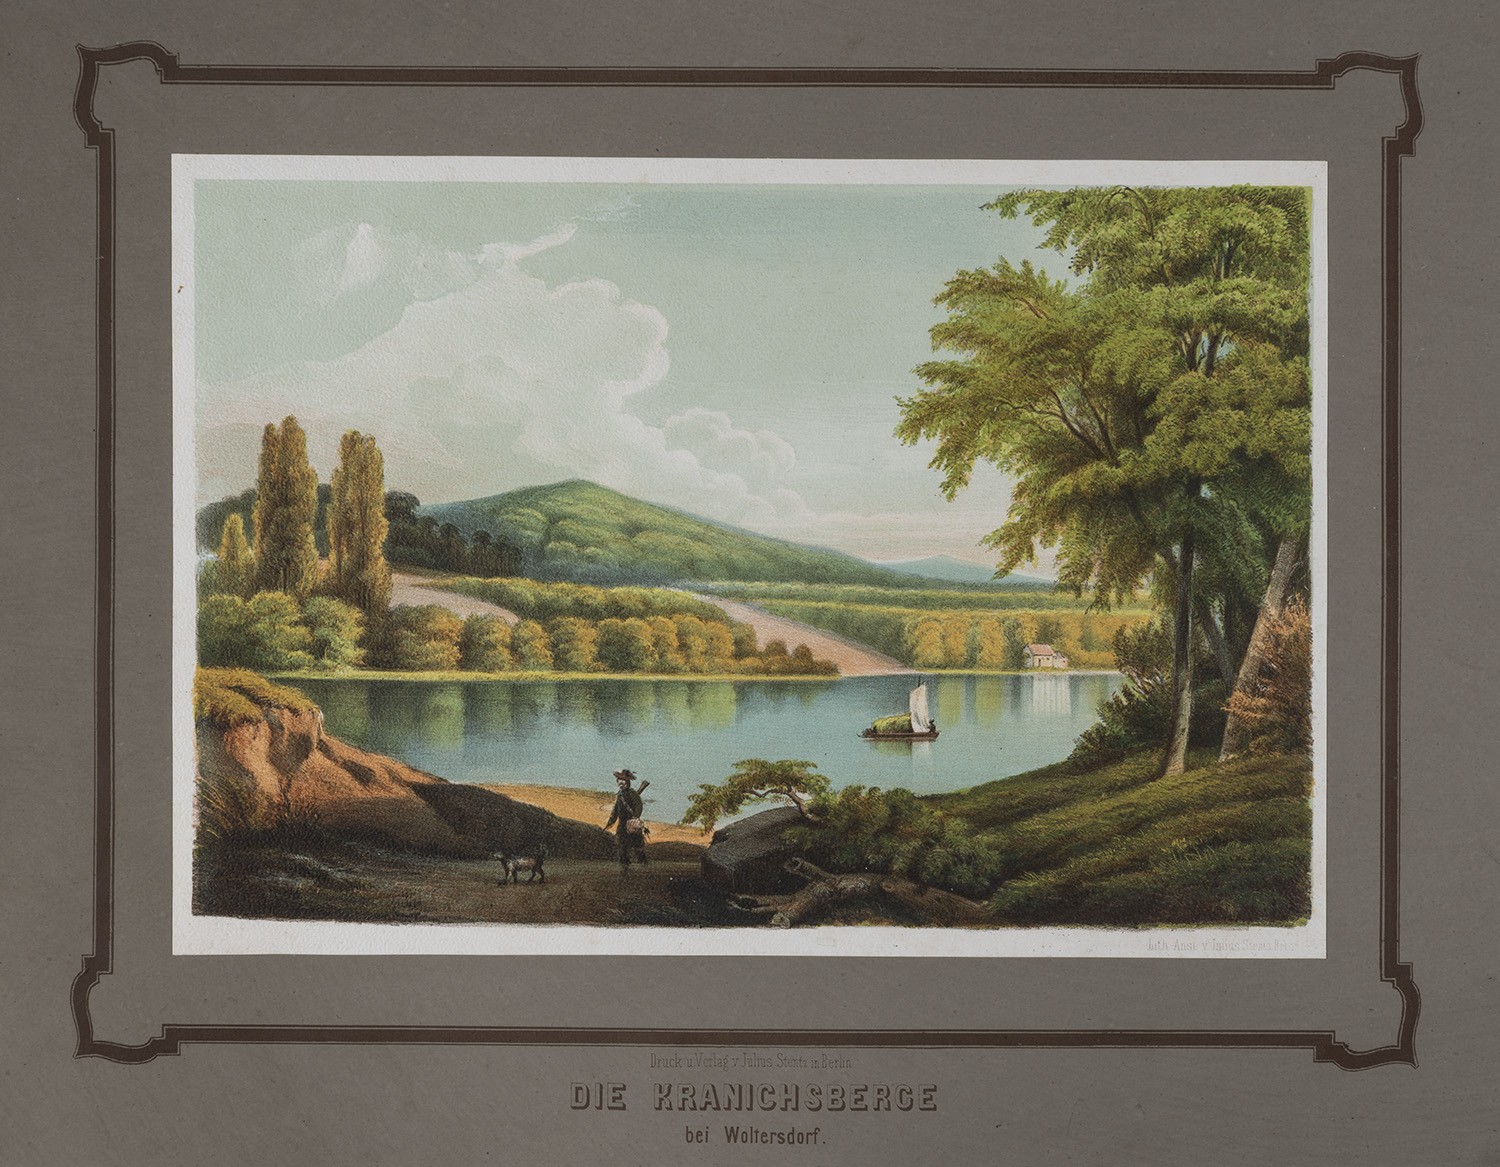 Woltersdorf (Kr. Niederbarnim): Kranichberge über den See (Rüdersdorfer Album, Tafel 2) (Landesgeschichtliche Vereinigung für die Mark Brandenburg e.V., Archiv CC BY)